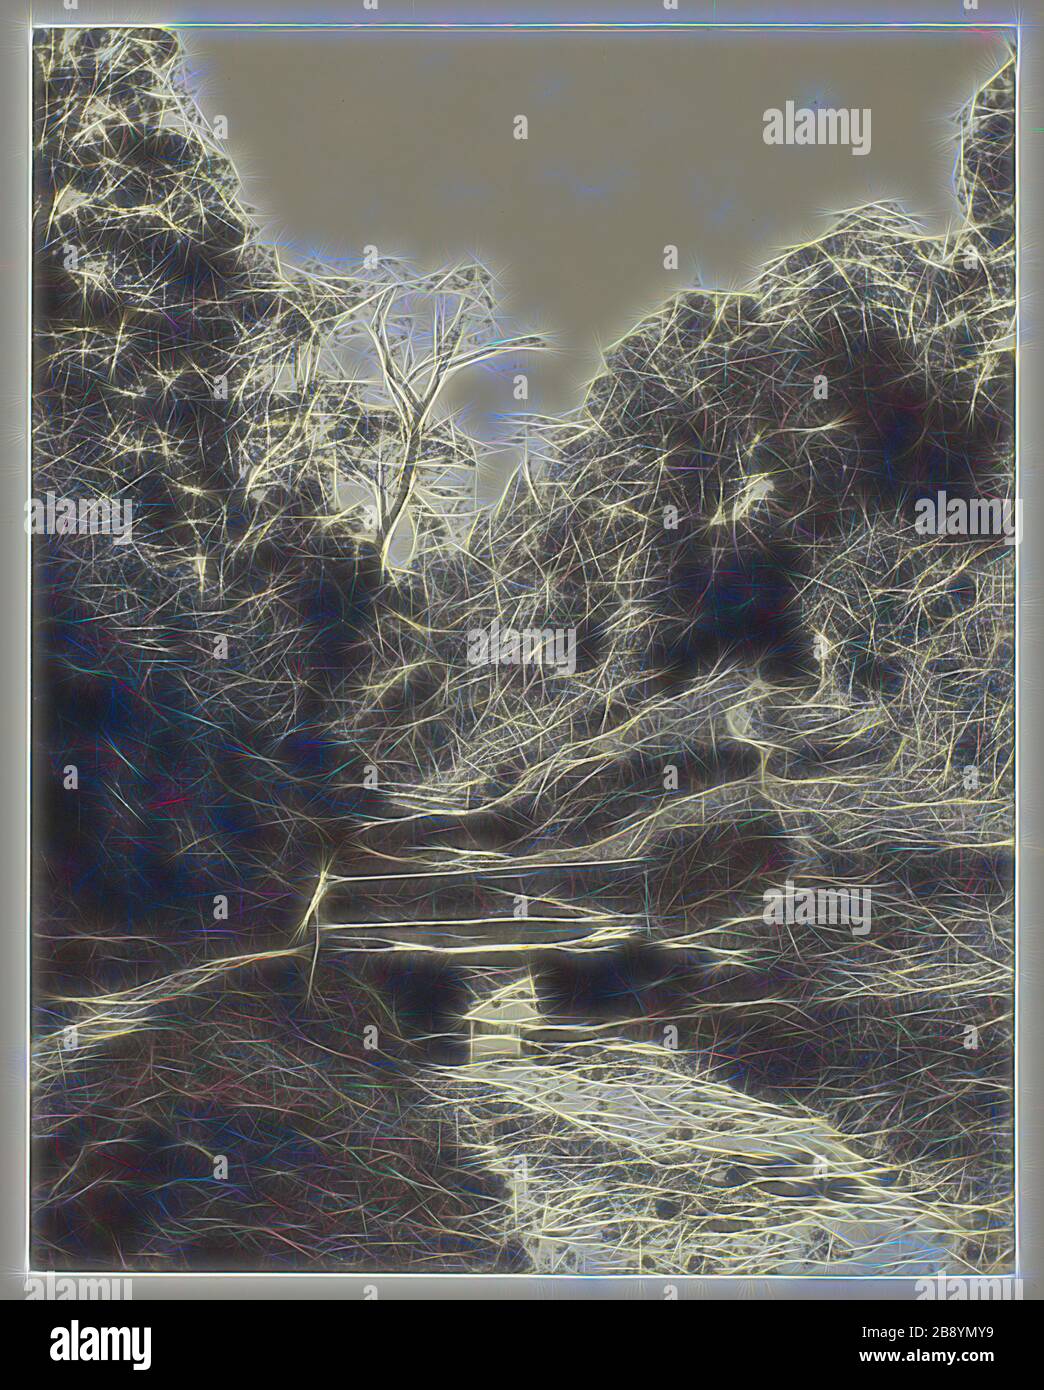 Scène près de Godalming, Surrey, ch. 1856, Alfred Rosling, anglais, 1802–1880, Angleterre, imprimé Albumen, 21,7 × 17,2 cm (image/papier), 44,7 × 33 cm (support), repensé par Gibon, design de brillant gai chaud de luminosité et de rayonnement de lumière. L'art classique réinventé avec une touche moderne. La photographie inspirée du futurisme, qui embrasse l'énergie dynamique de la technologie moderne, du mouvement, de la vitesse et révolutionne la culture. Banque D'Images